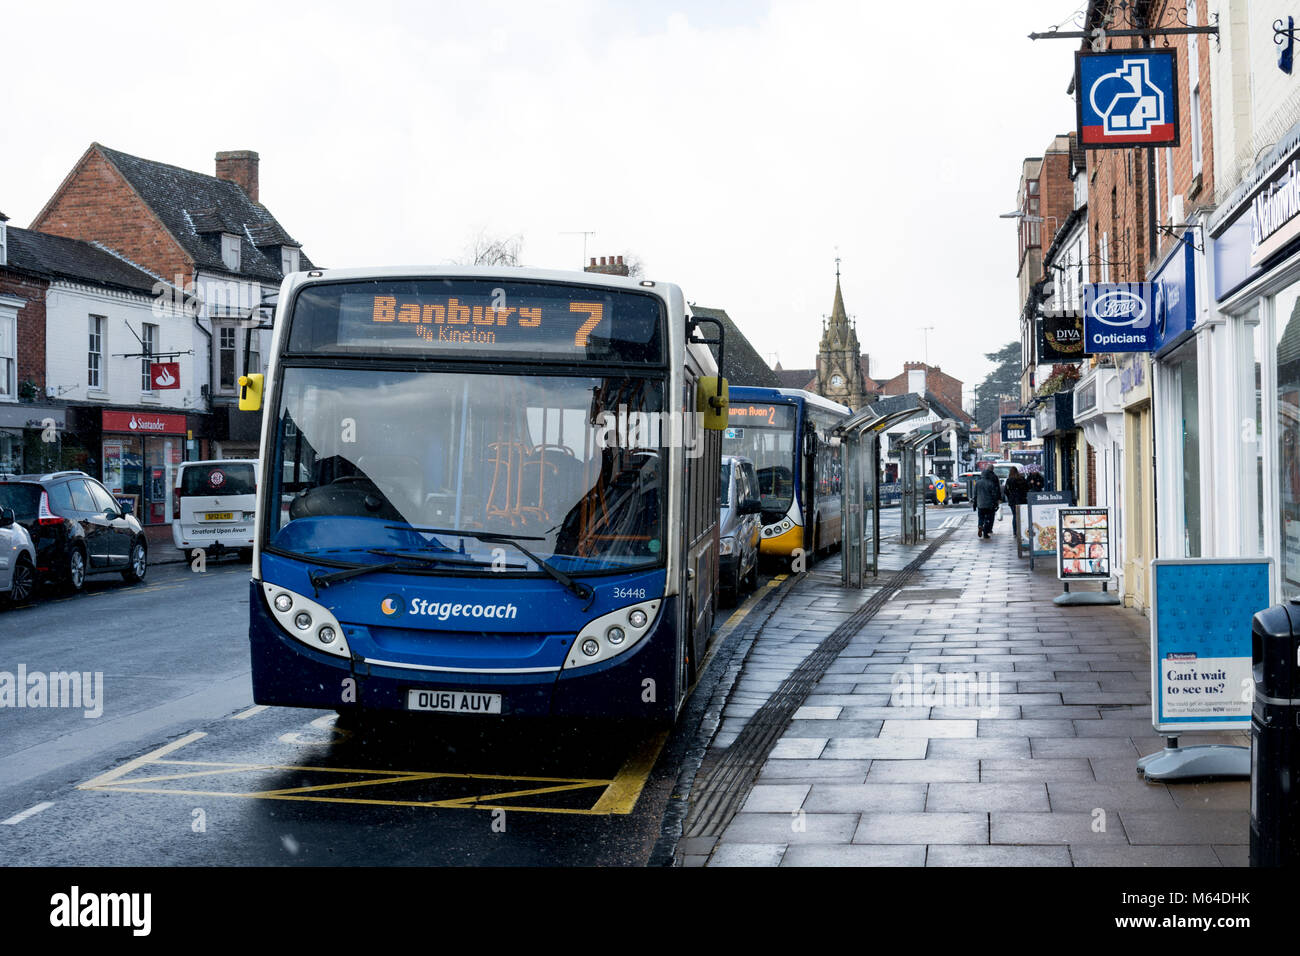 Stagecoach n. 7 servizio di autobus fino a Banbury, Wood Street, Stratford-upon-Avon, Warwickshire, Regno Unito Foto Stock